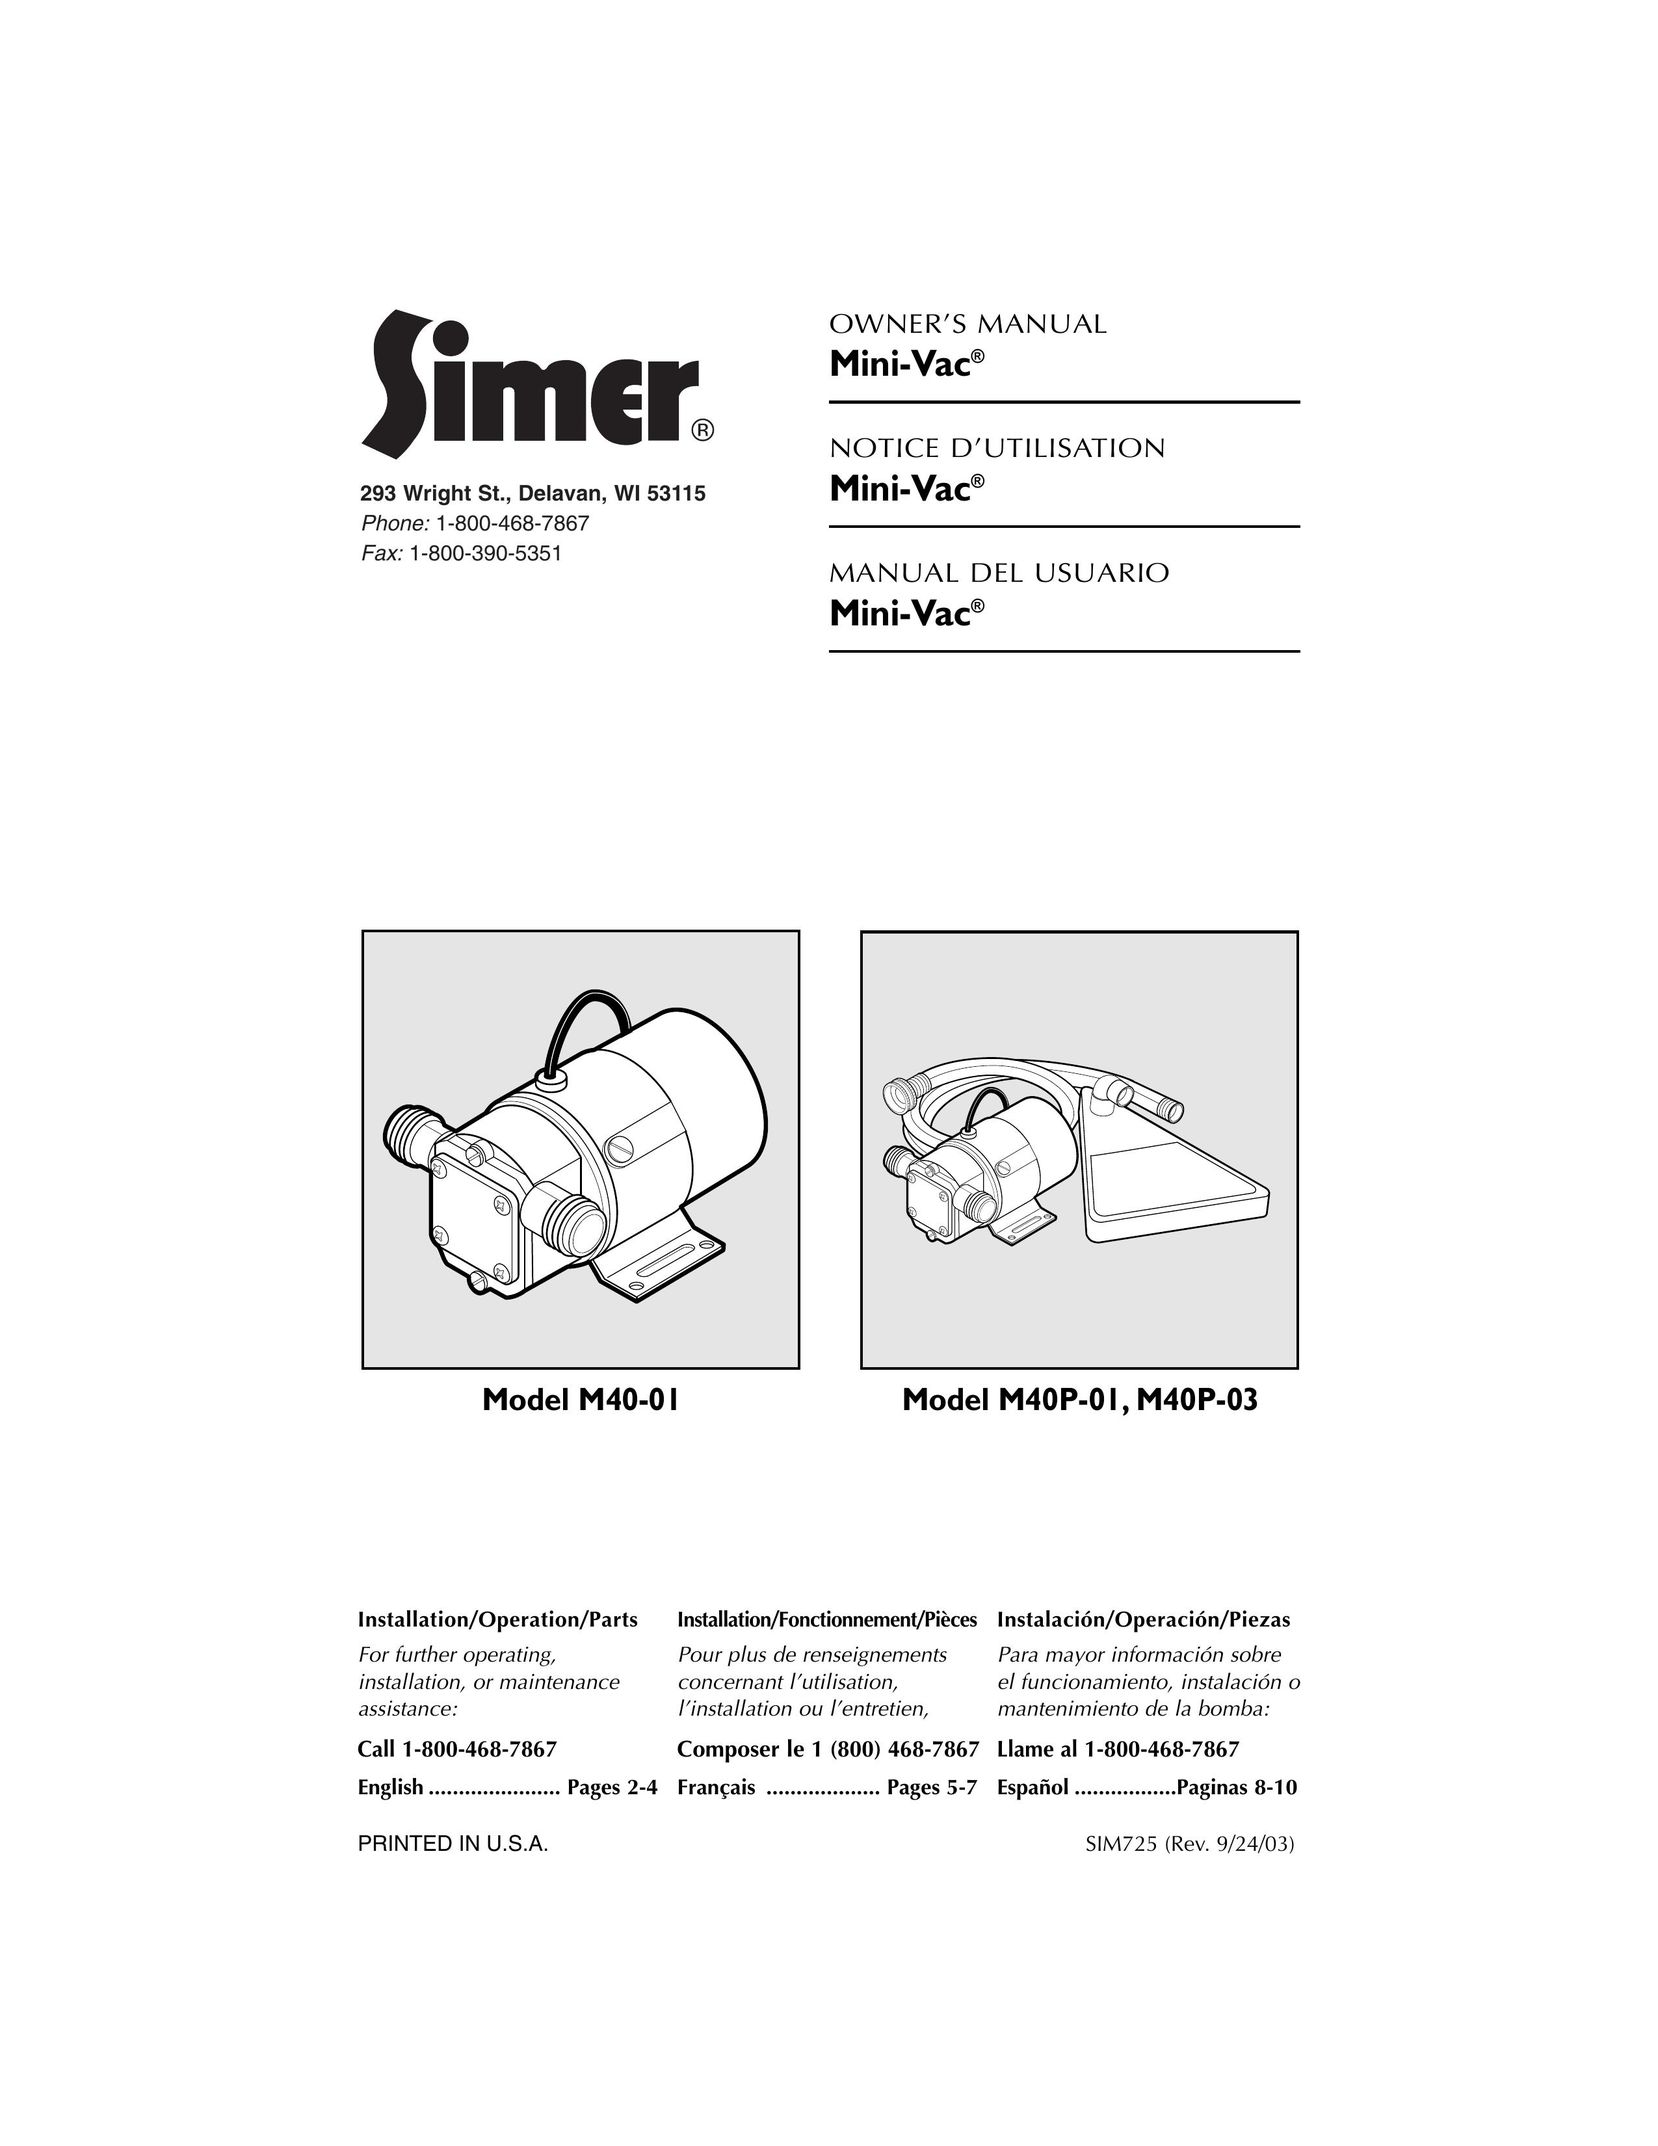 Simer Pumps M40P-03 Vacuum Cleaner User Manual